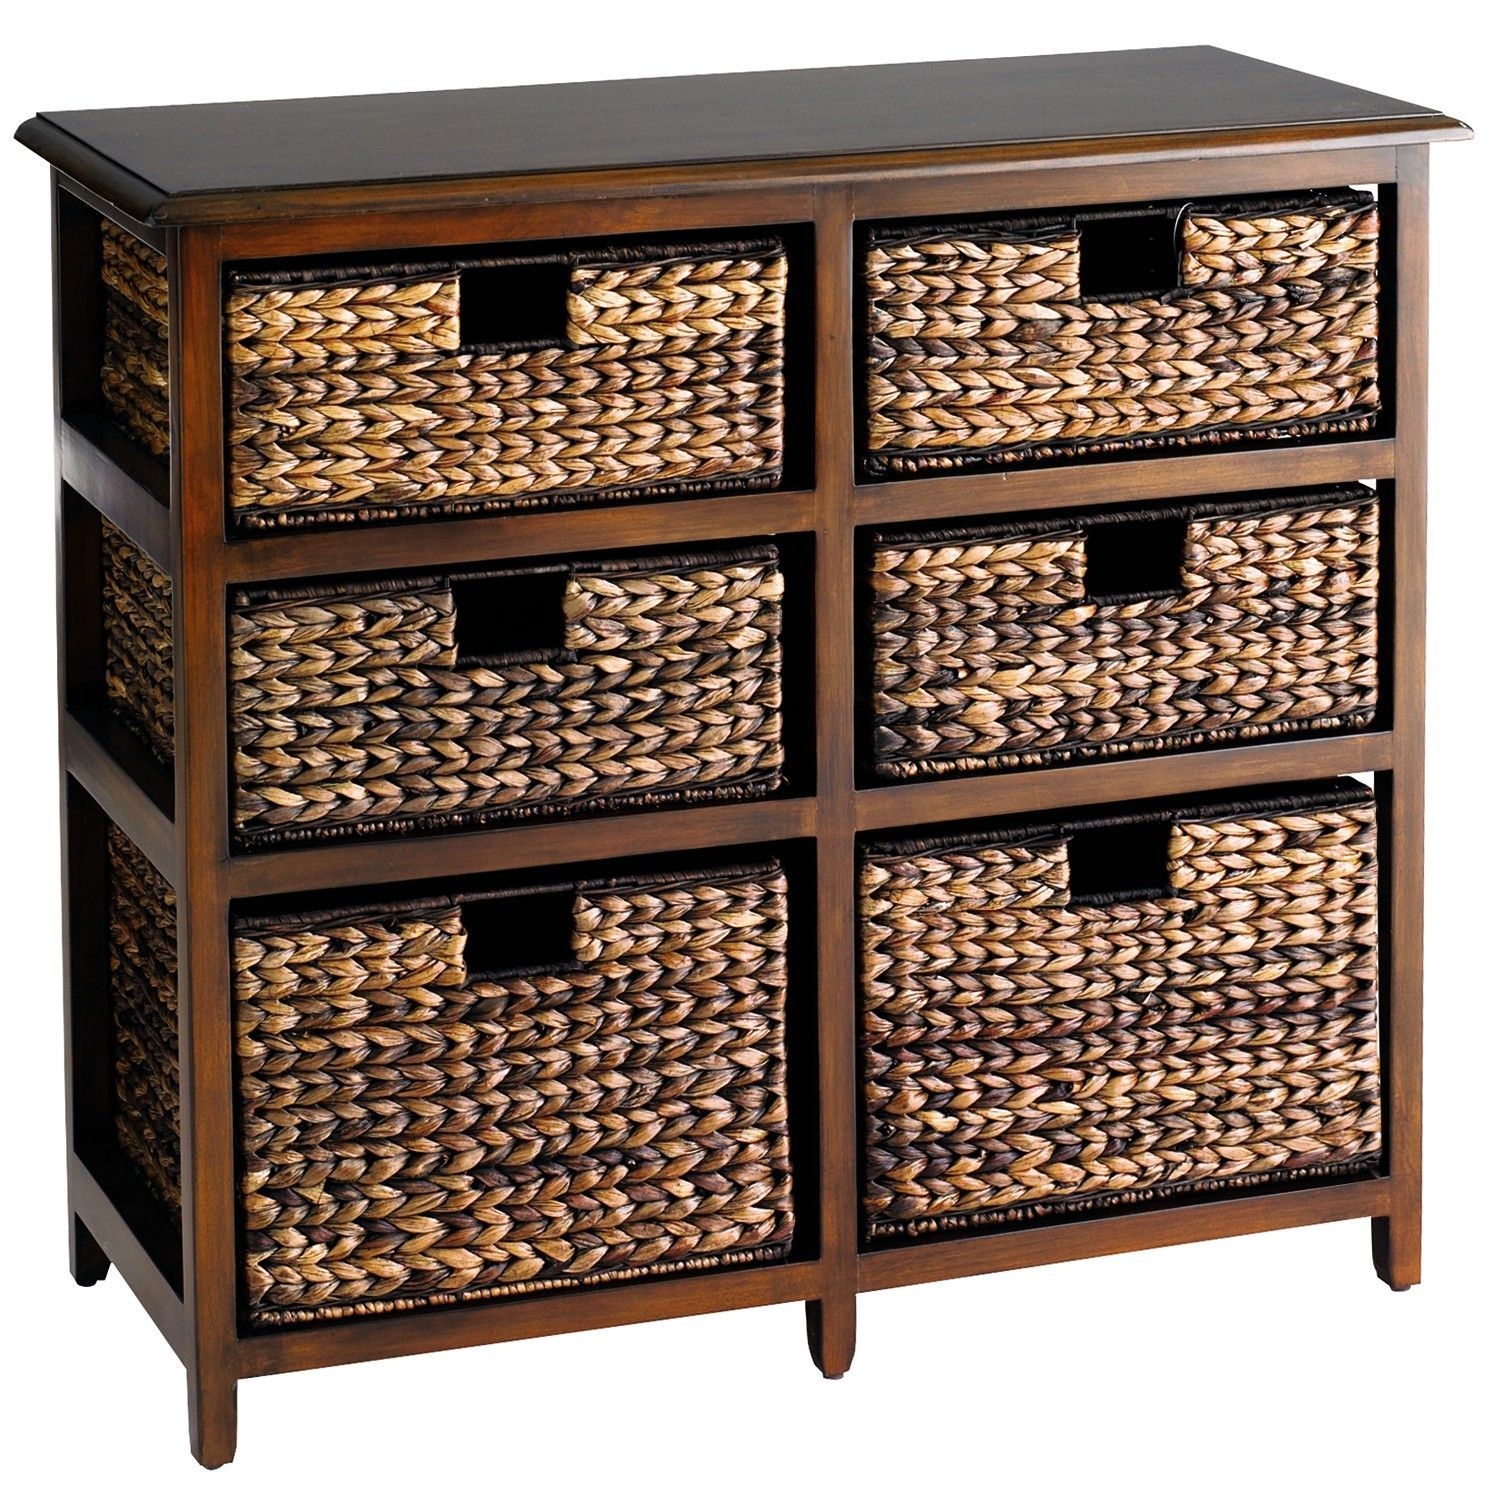 Wicker storage chests